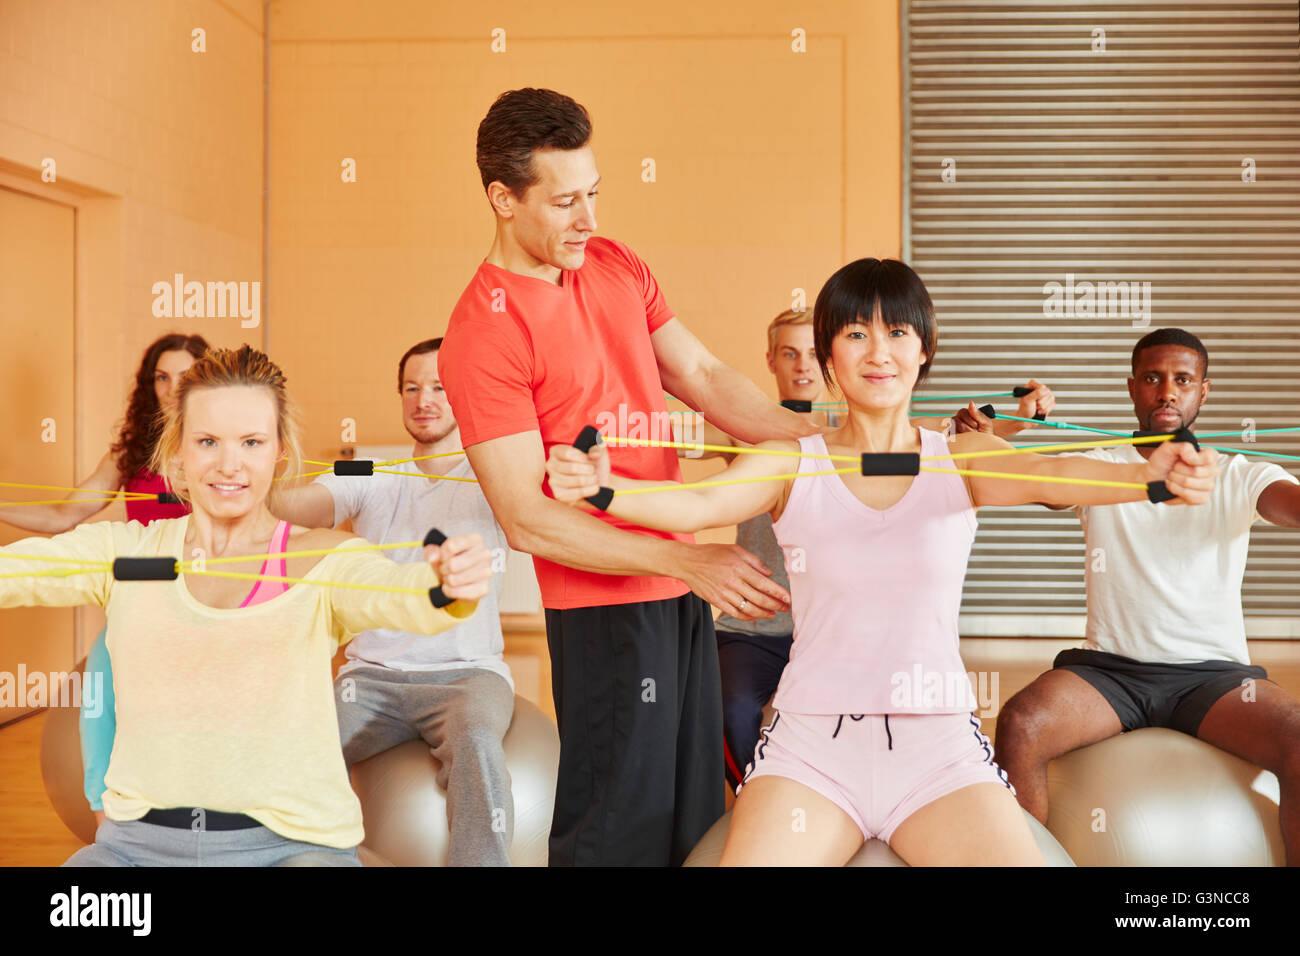 Fitness-Trainer zeigt Übung mit Band im Reha-Unterricht Stockfoto